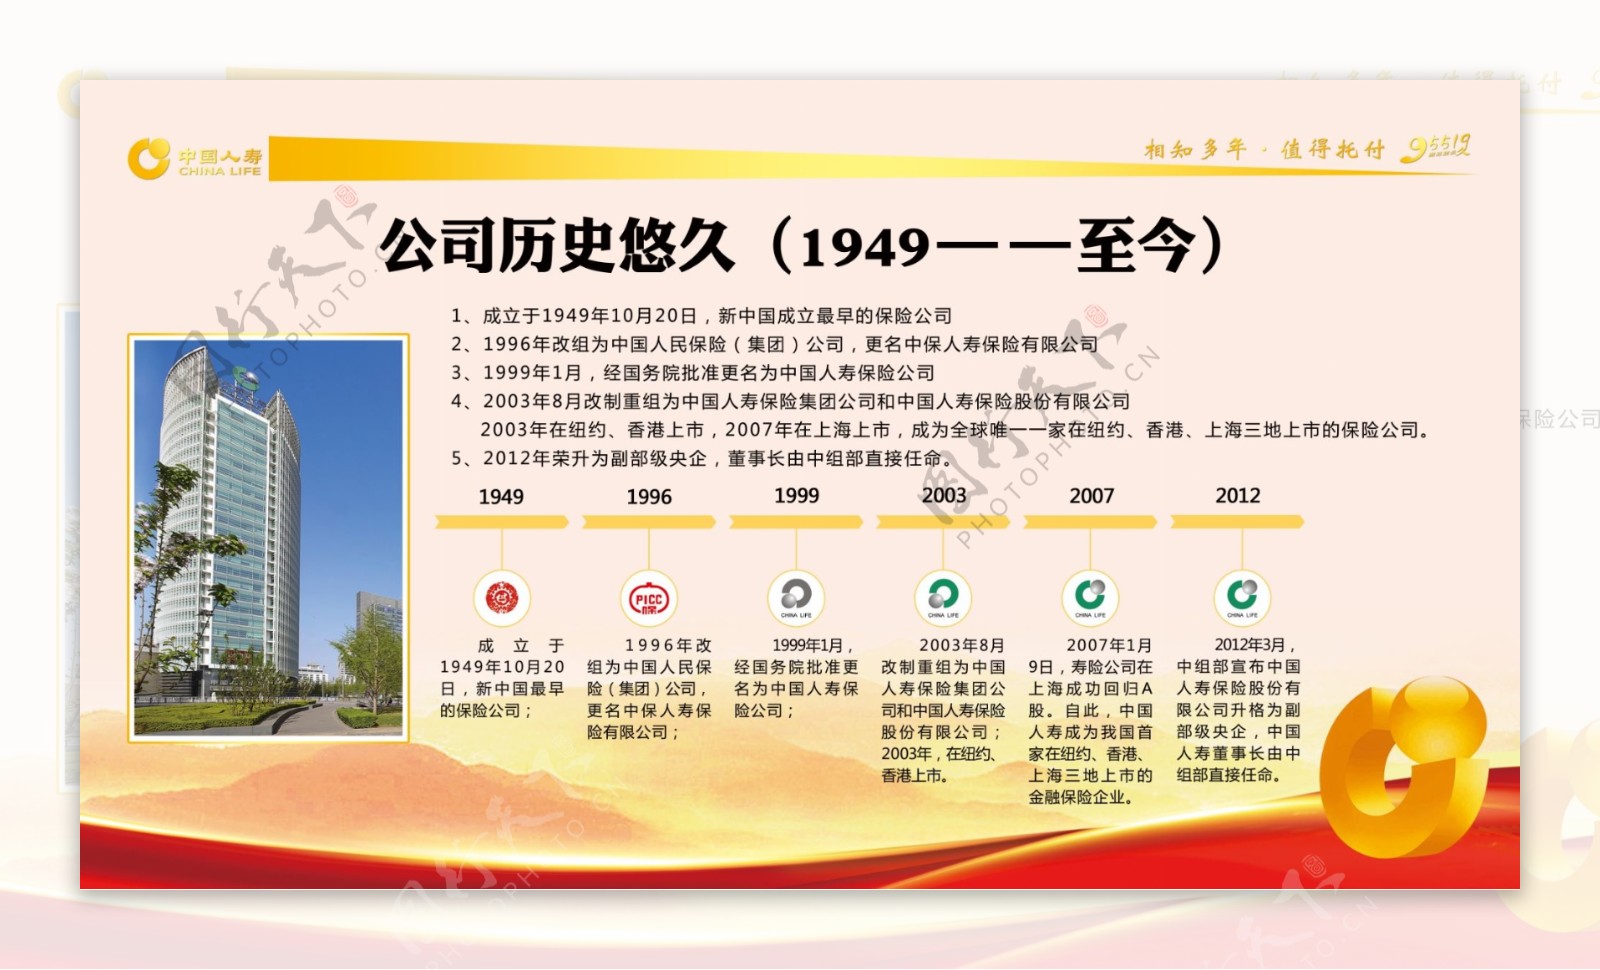 中国人寿发展历史